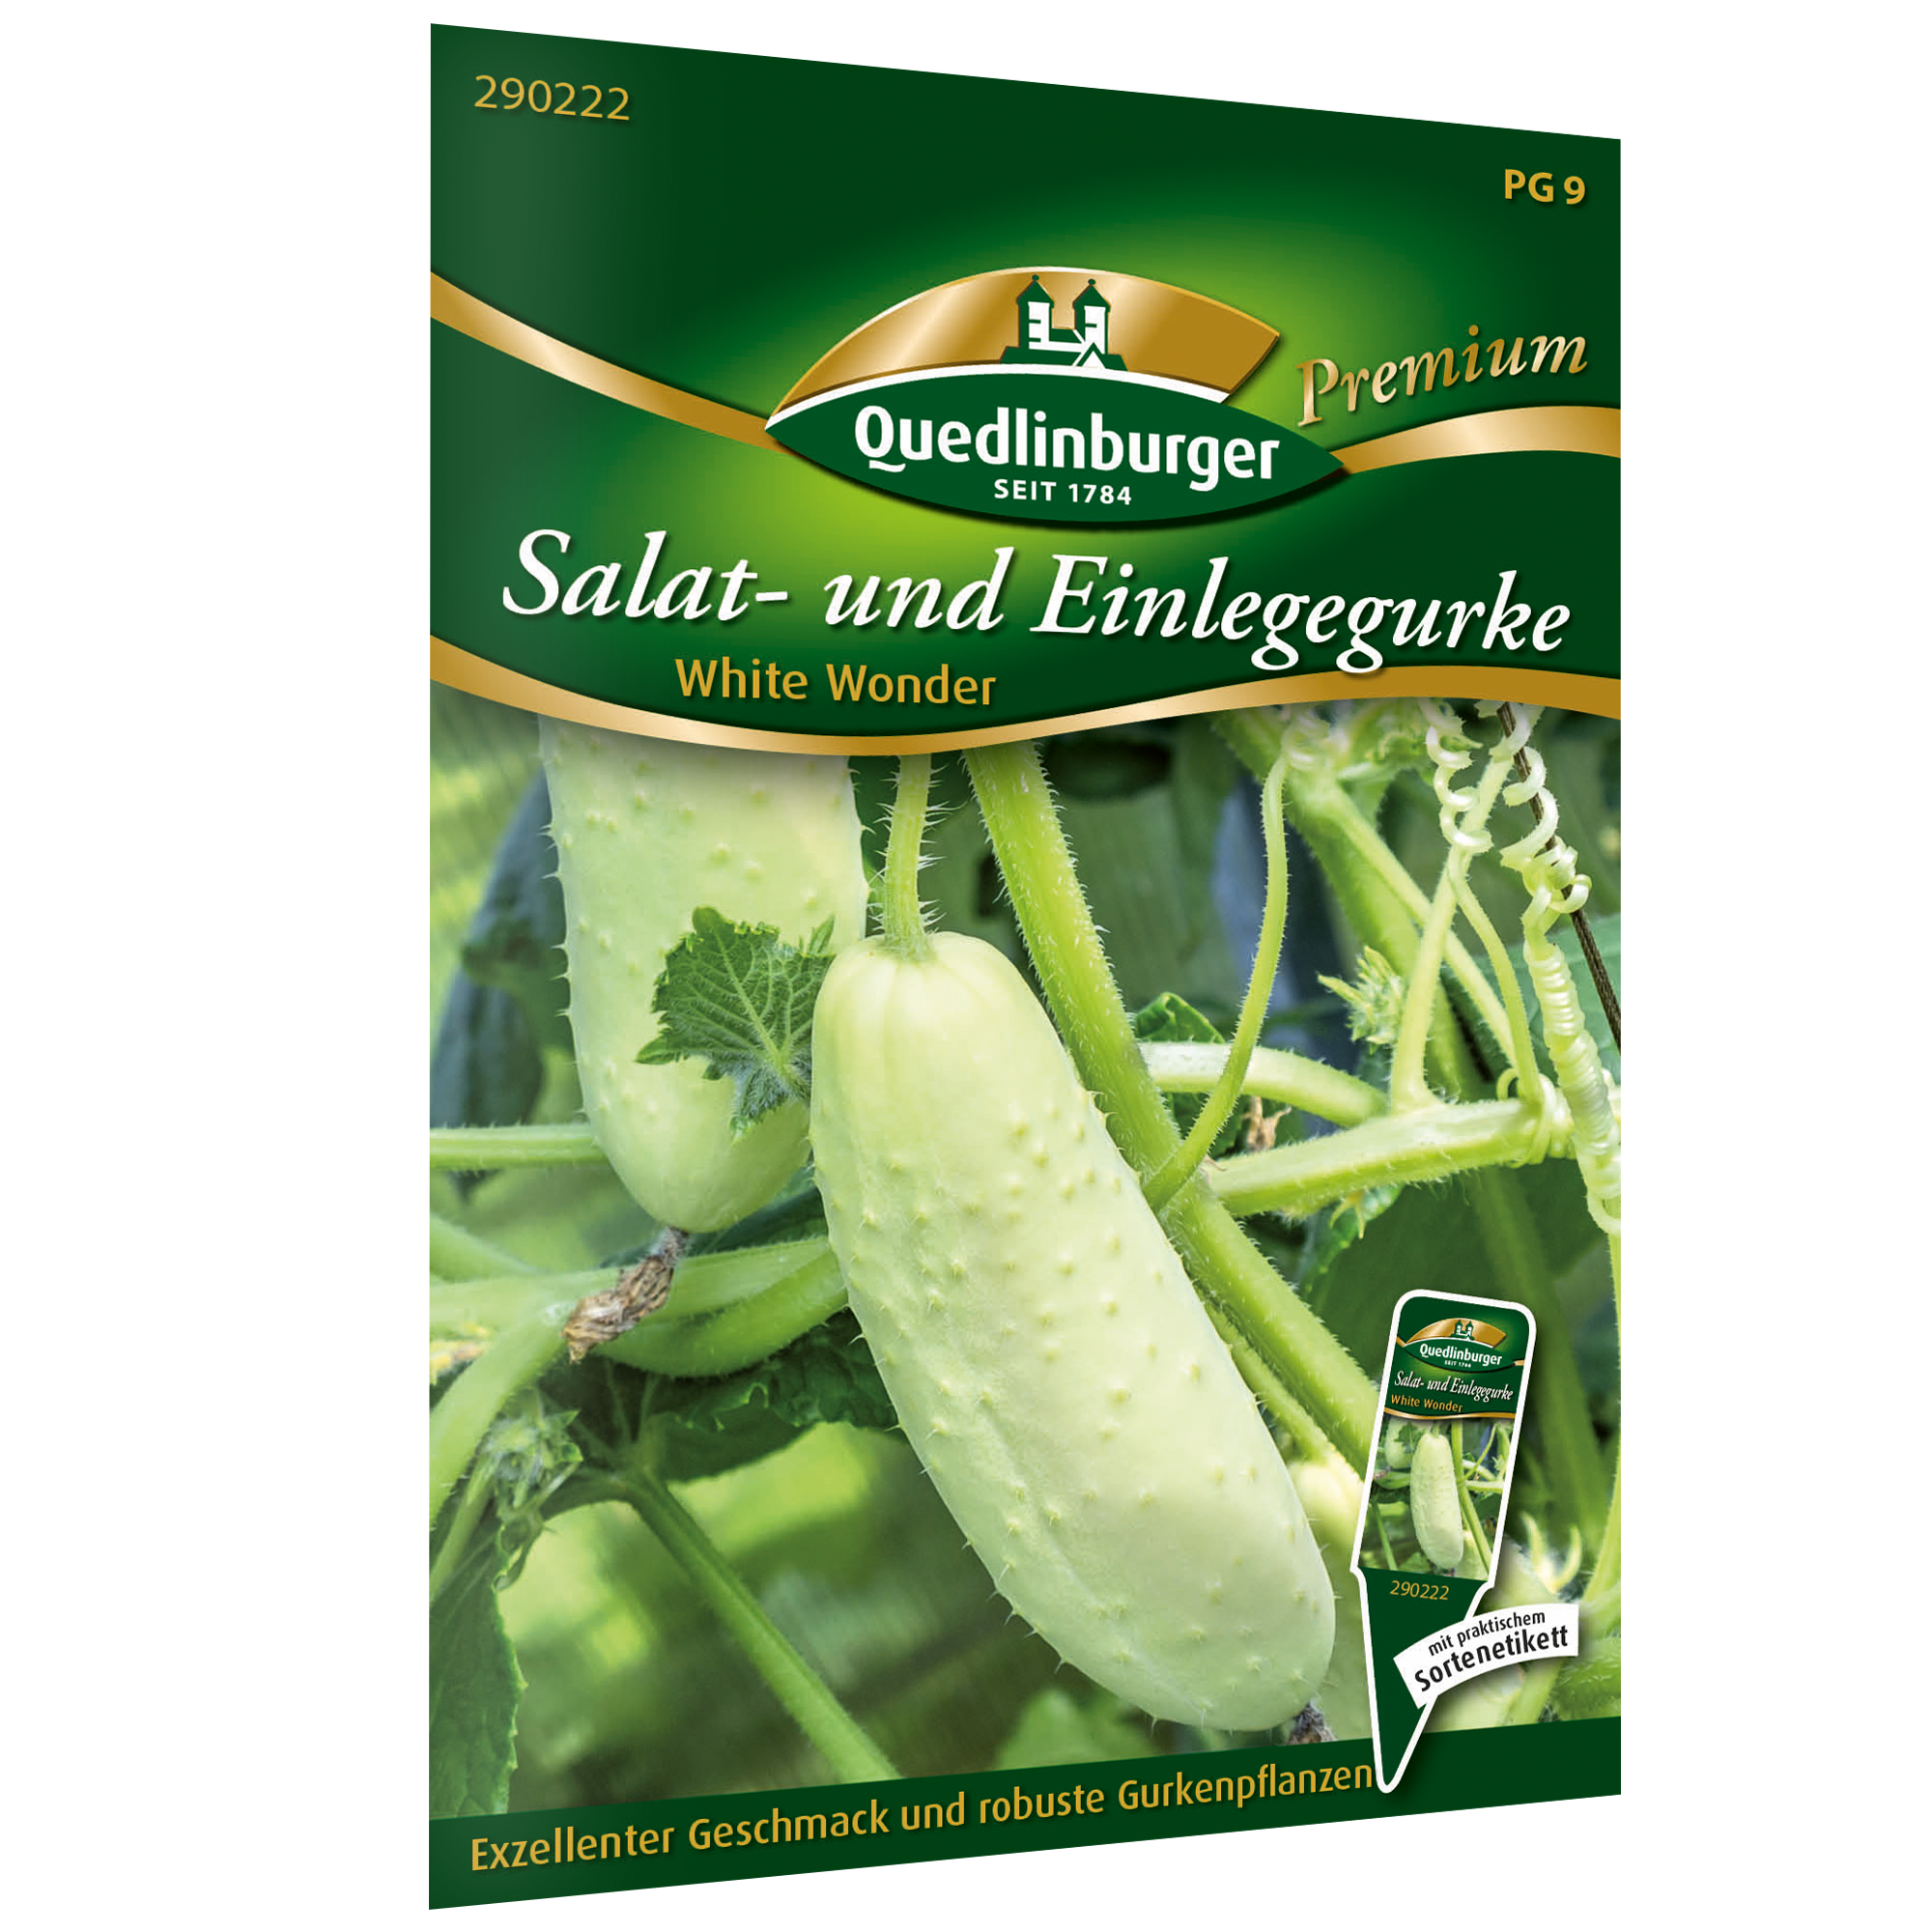 Salat- und Einlegegurke 'White Wonder' + product picture